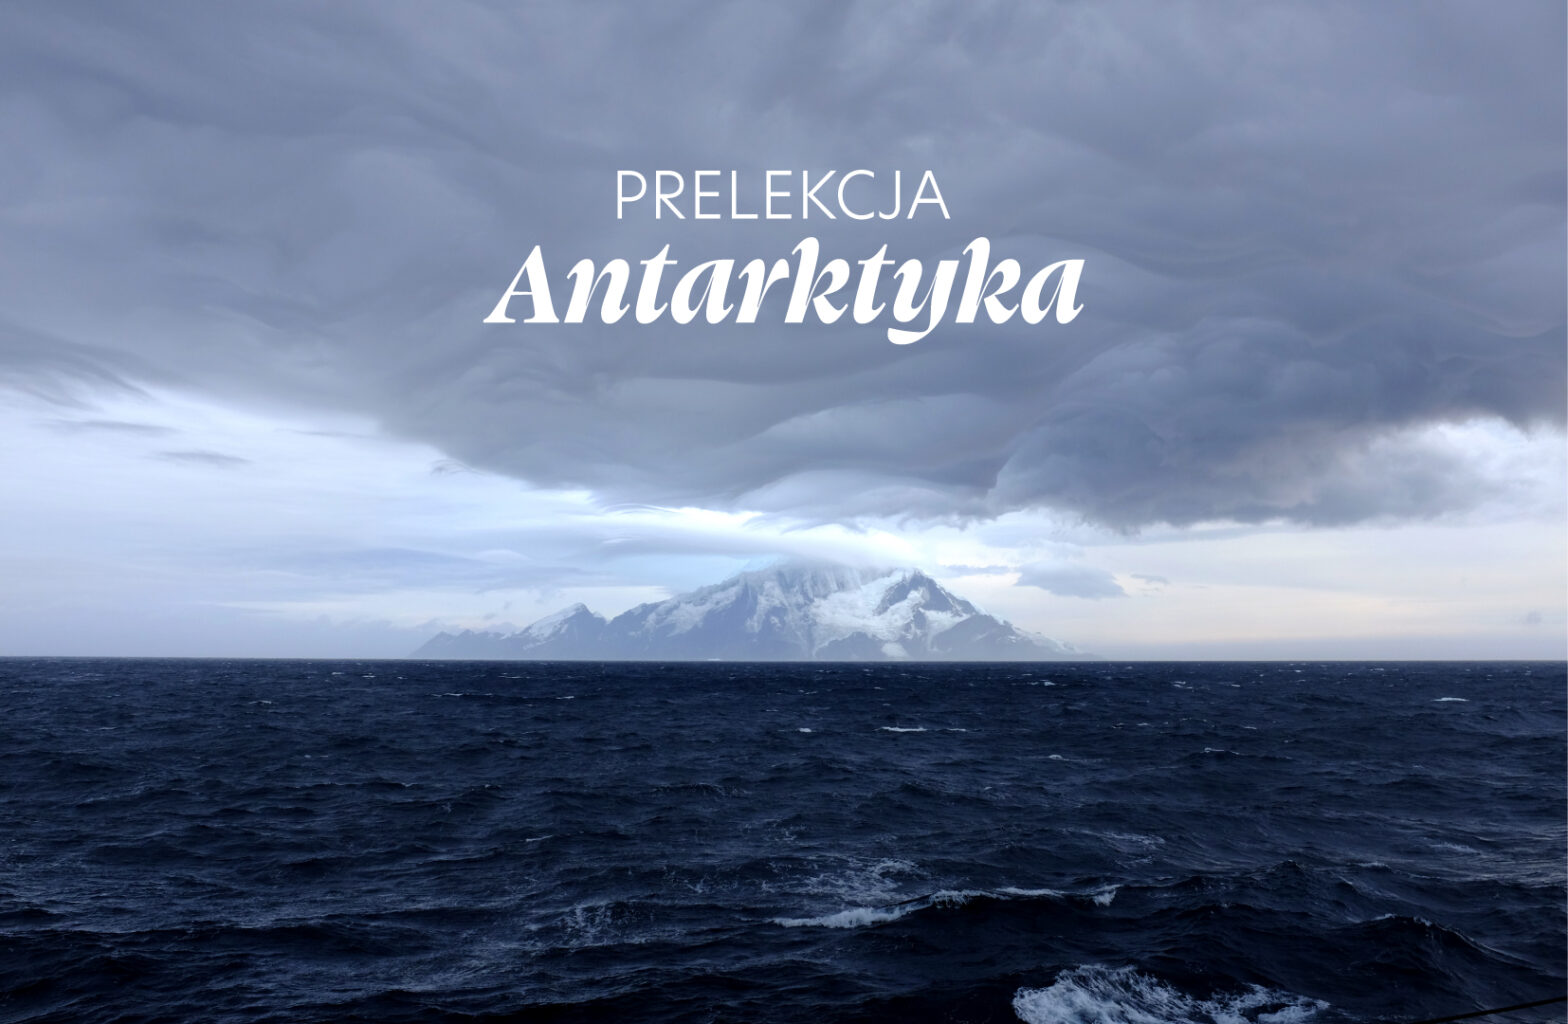 Prelekcja “Antarktyka” 03.02.2023 r.